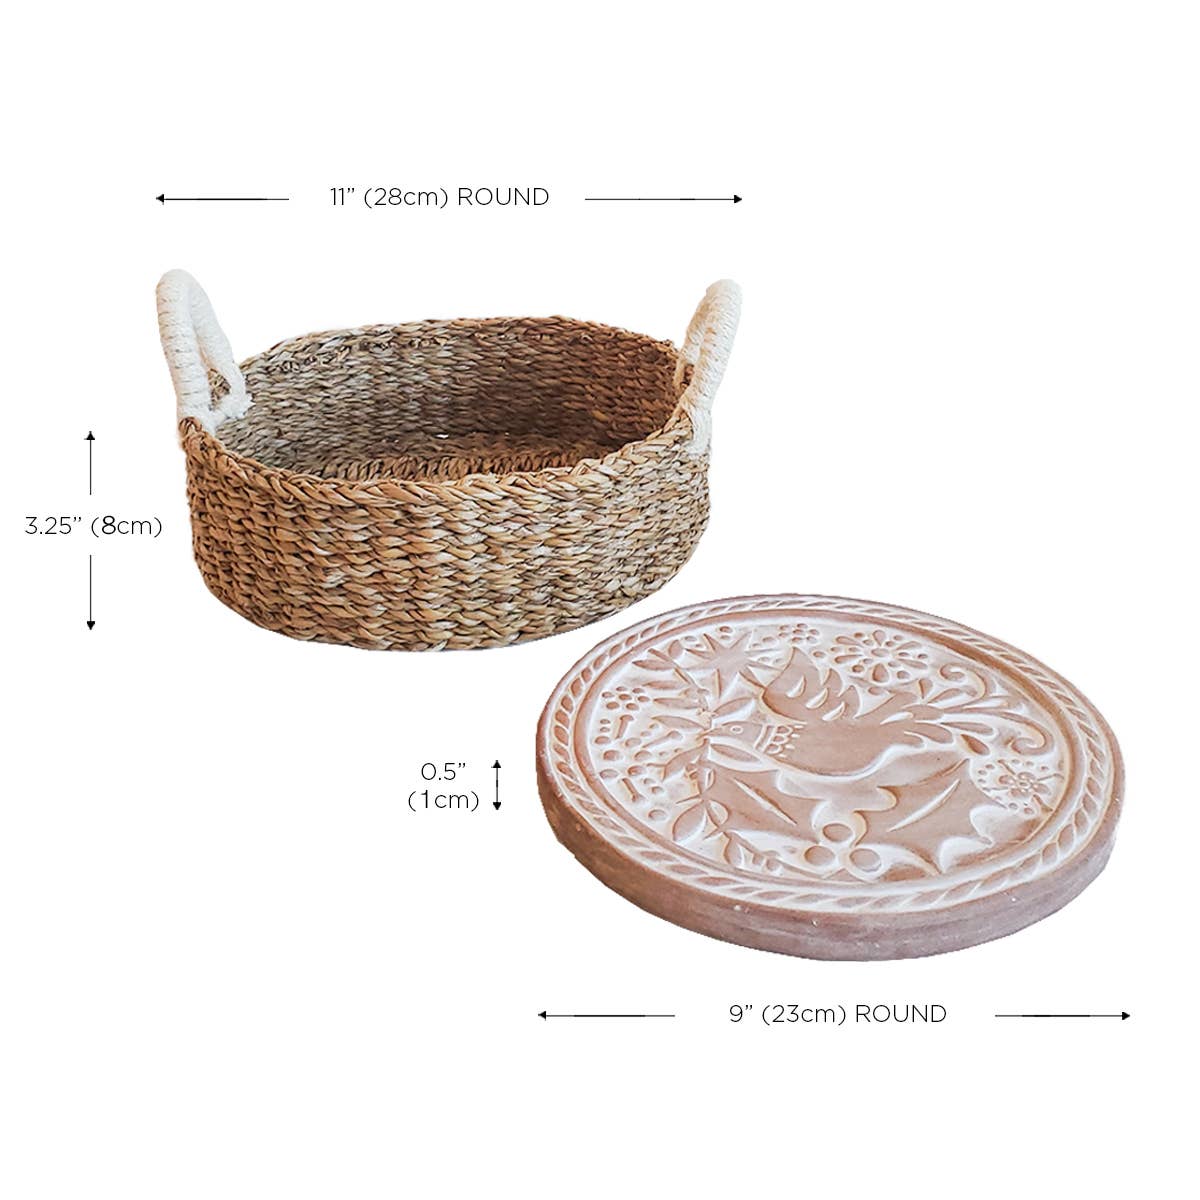 Handmade Bread Warmer & Wicker Basket - Bird Round